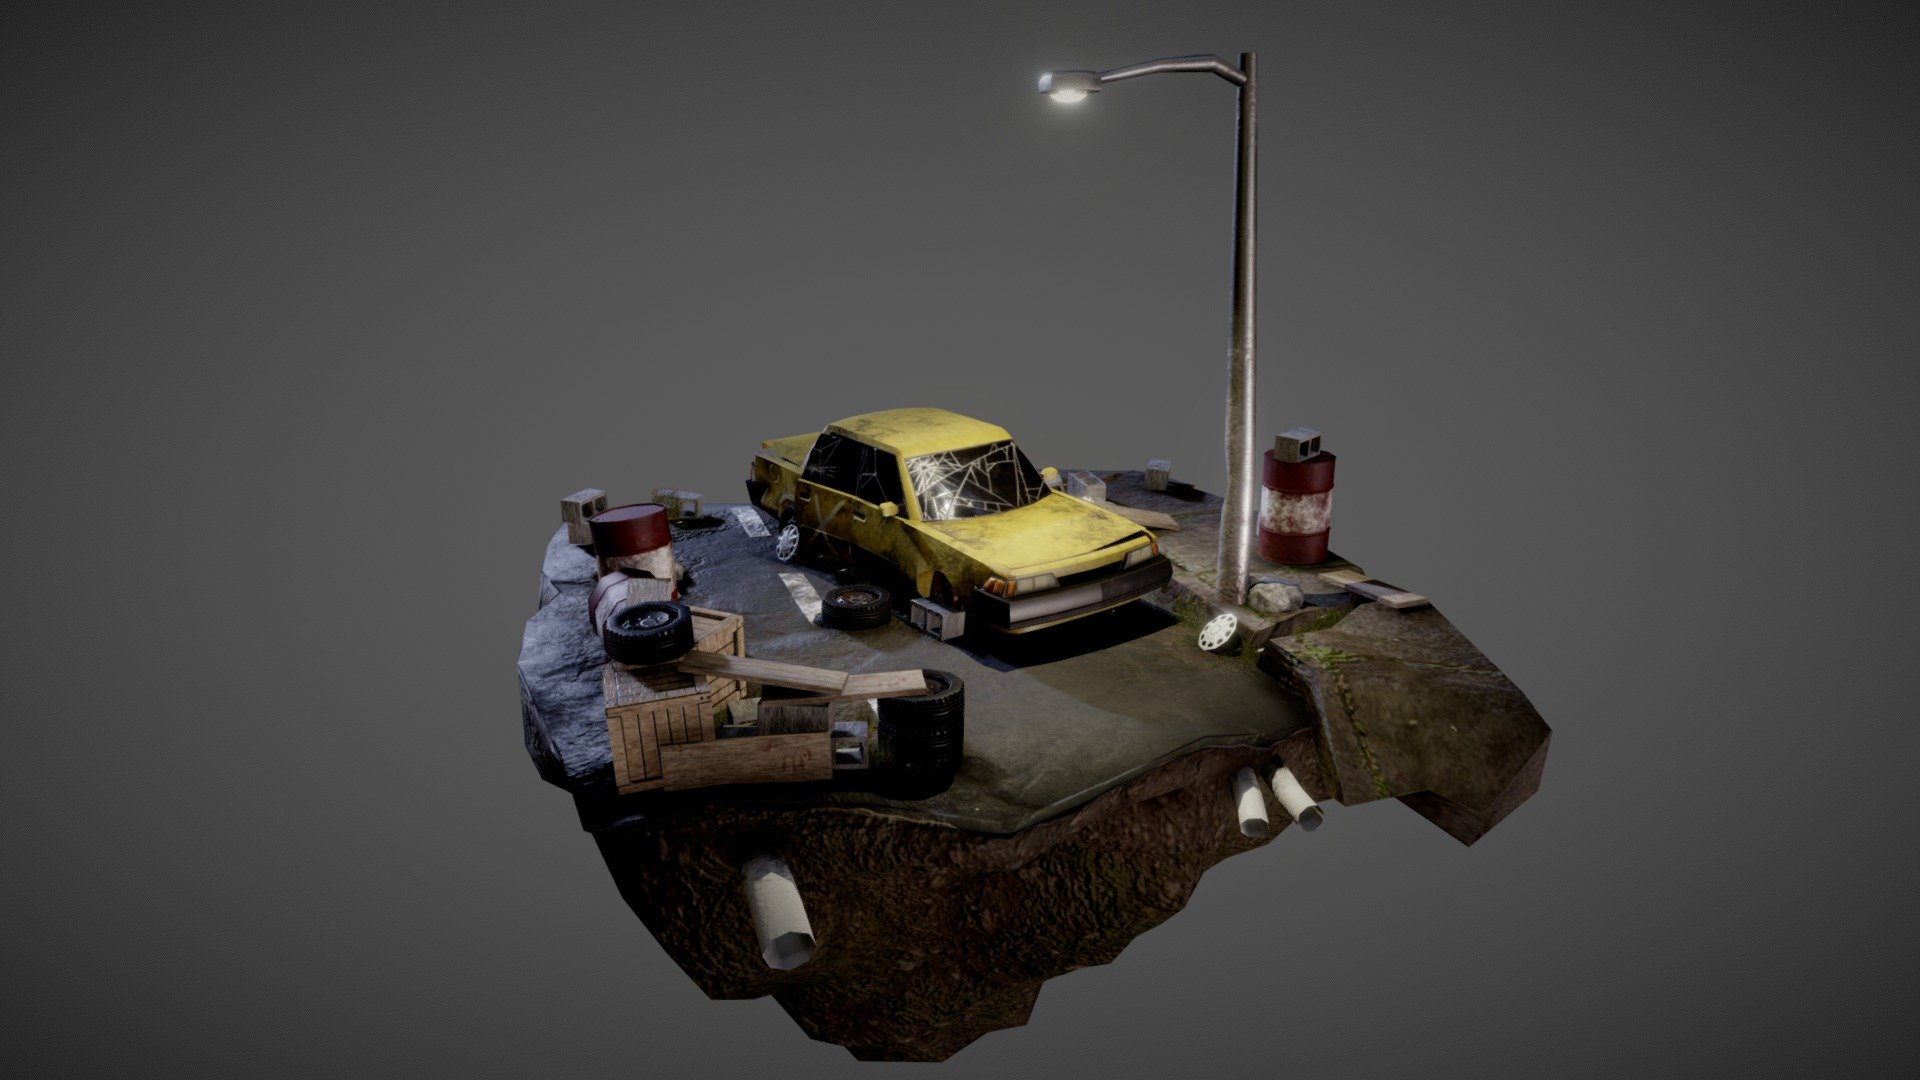 Apocalyptic Roadside/Junkyard Diorama - Download Free 3D model by Yes. JH (@Avanti.snek) 3d model